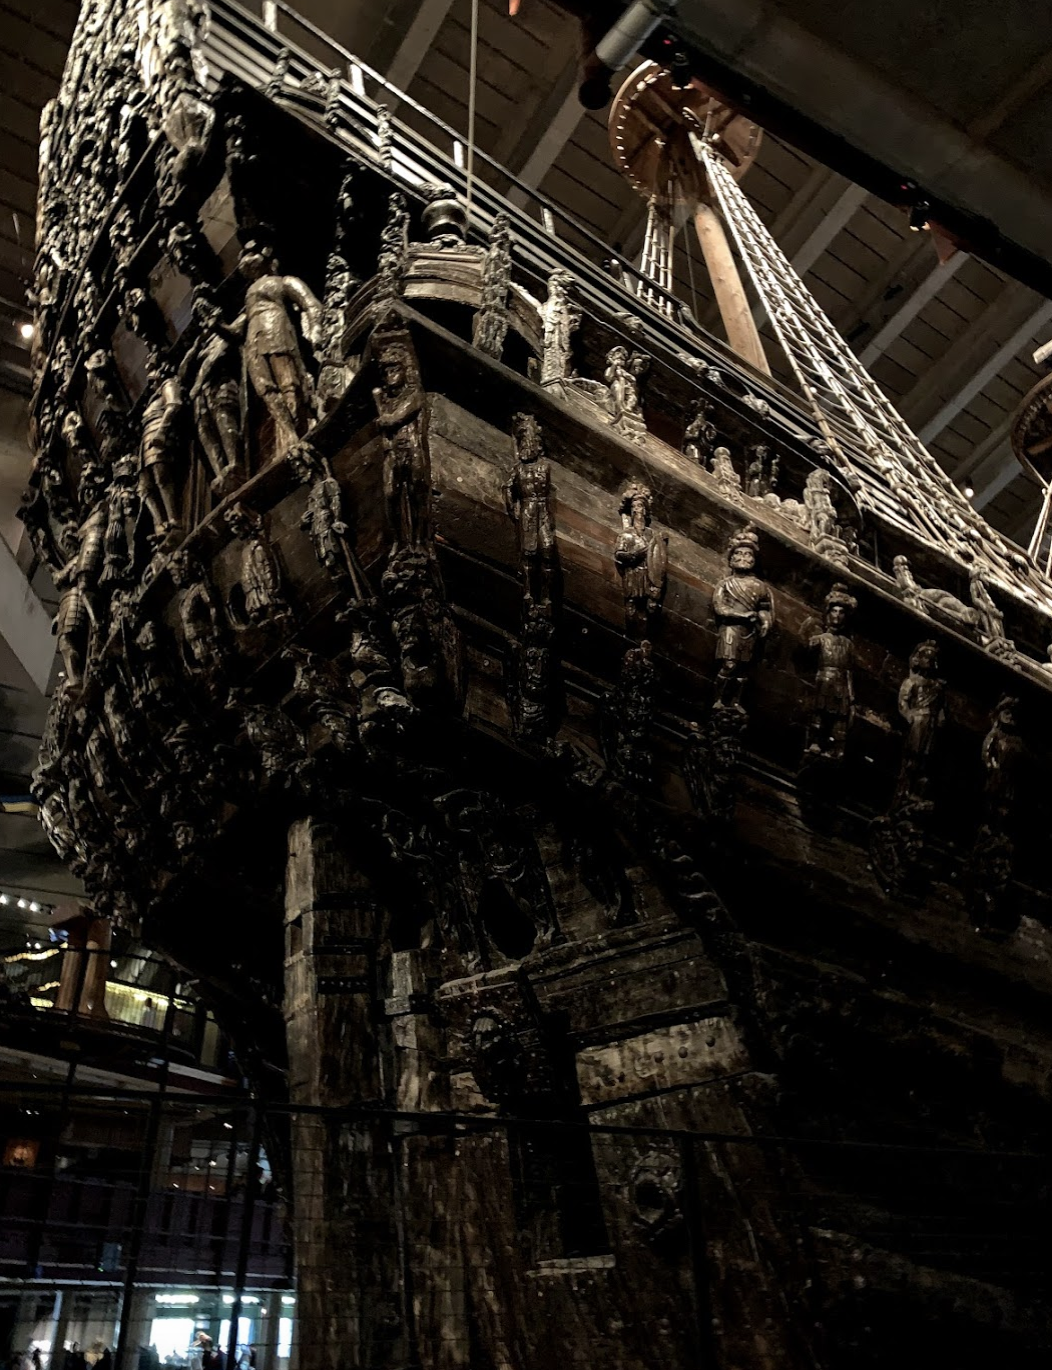 Vasa Museum, Sweden